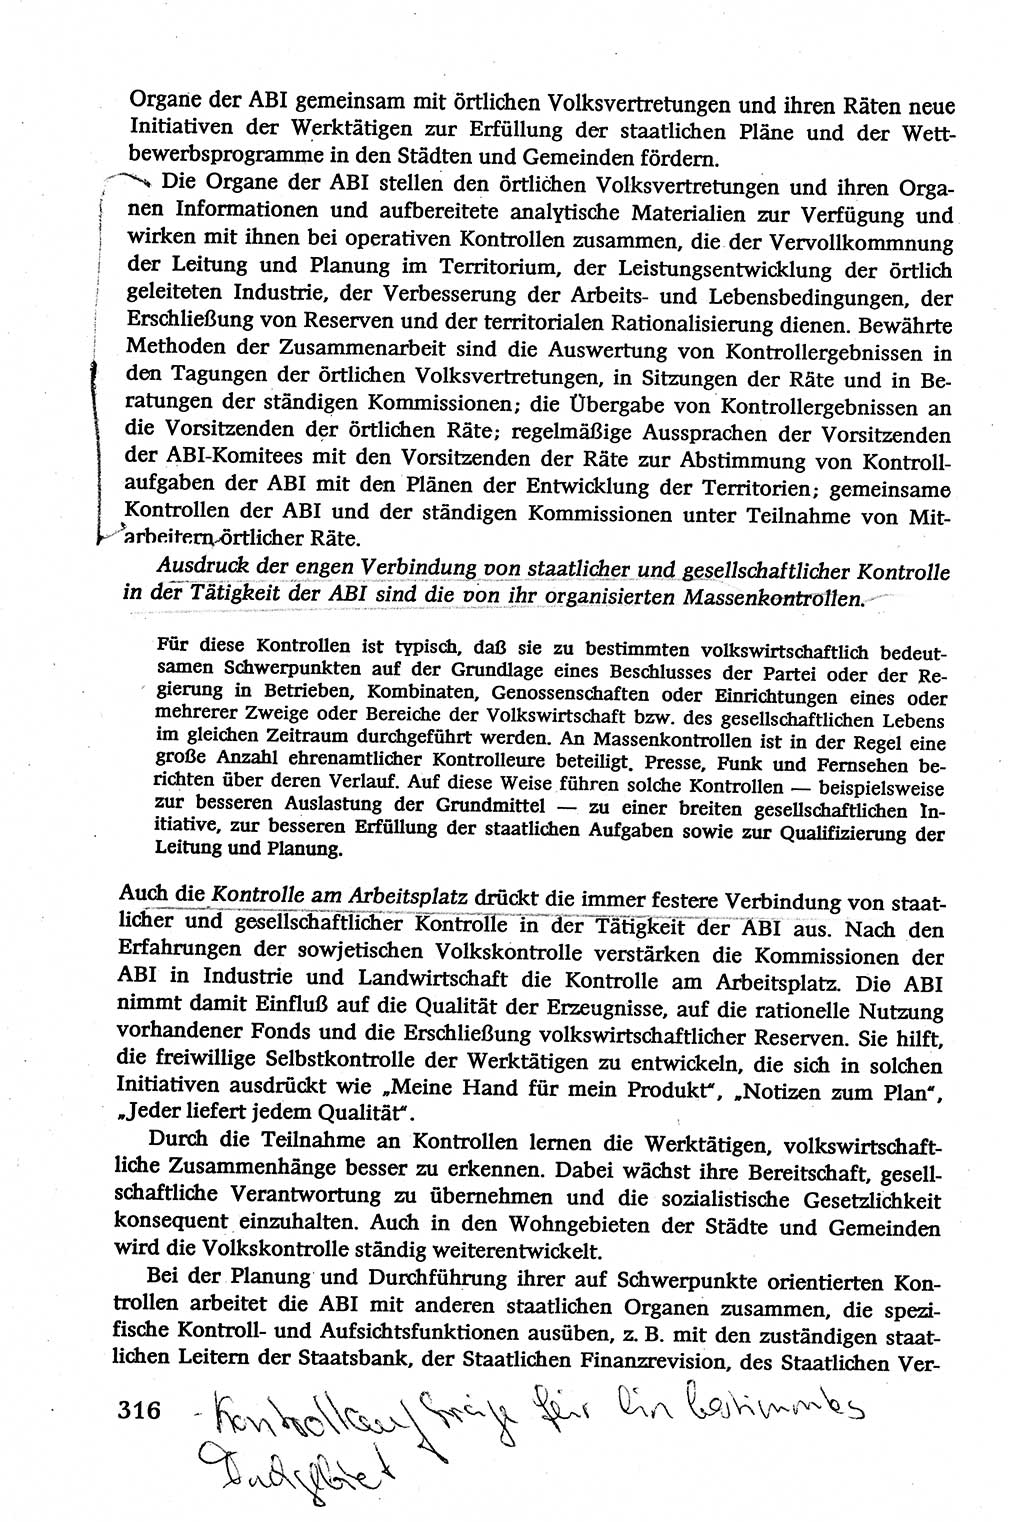 Verwaltungsrecht [Deutsche Demokratische Republik (DDR)], Lehrbuch 1979, Seite 316 (Verw.-R. DDR Lb. 1979, S. 316)